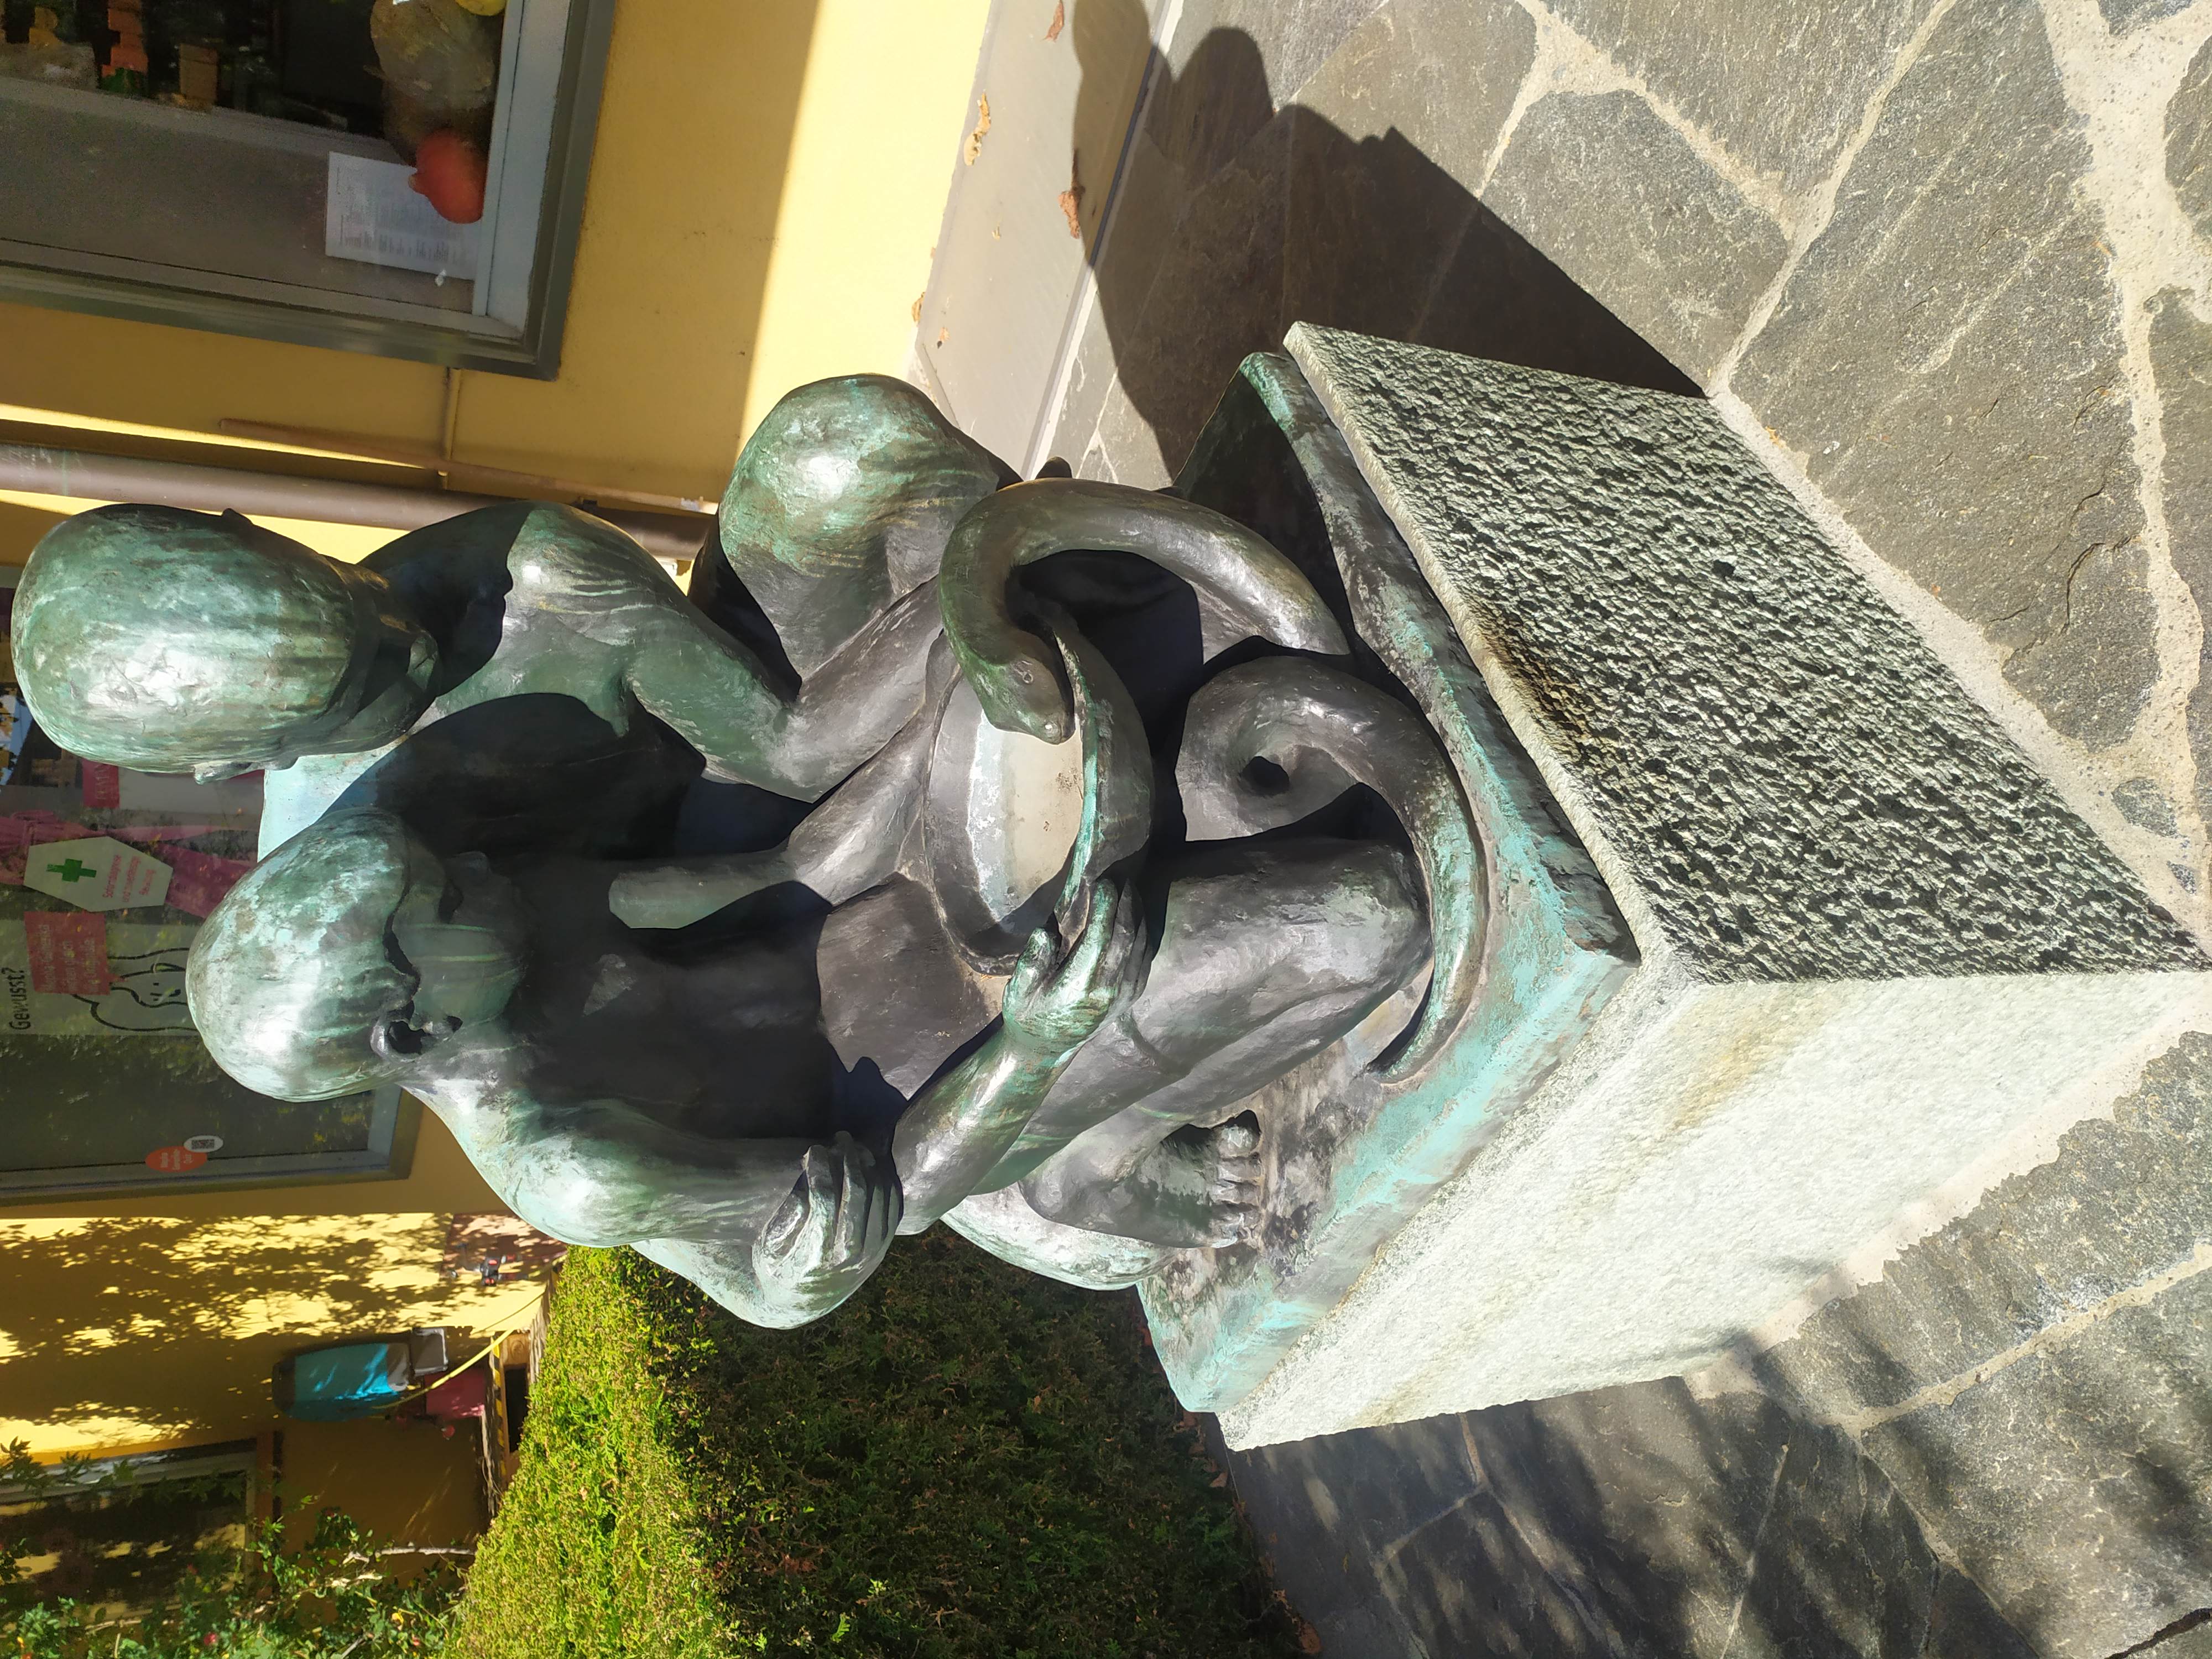 M. Piotrowski, sculpture of two children with a snake (bronze, H 90cm), 1953, Wartstrasse 44, Winterthur, Switzerland